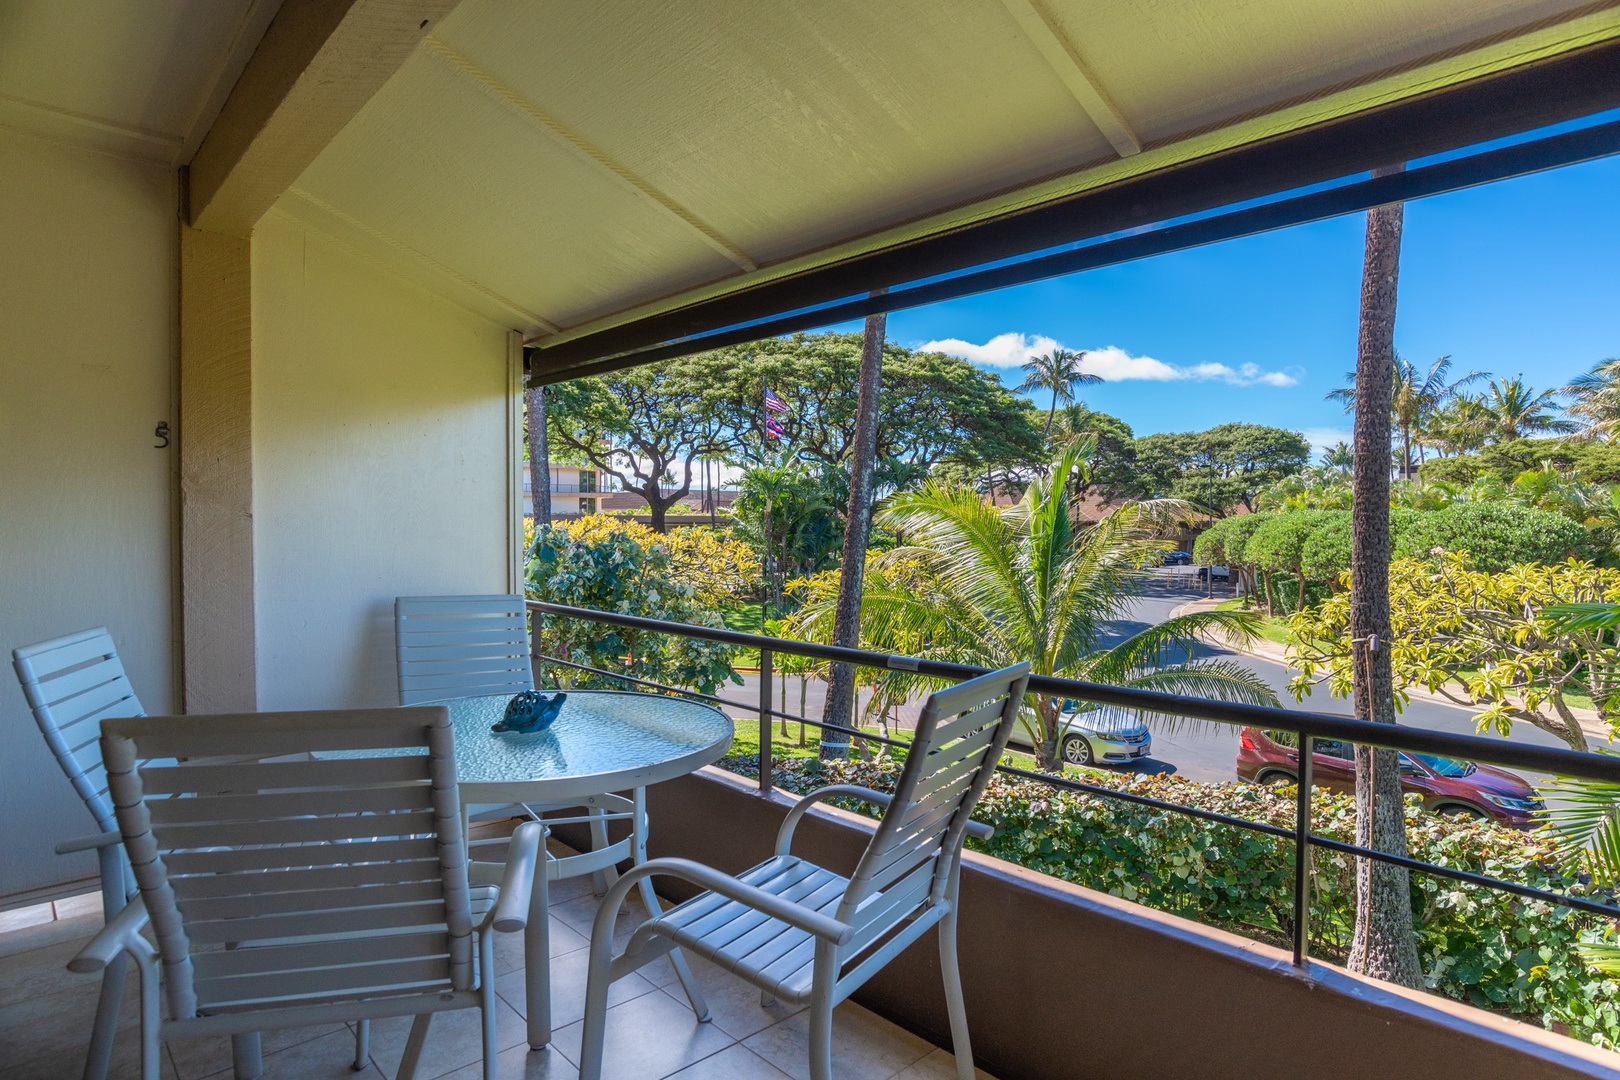 Lahaina Vacation Rentals, Maui Kaanapali Villas B225 - Spacious lanai surrounded by lush resort grounds